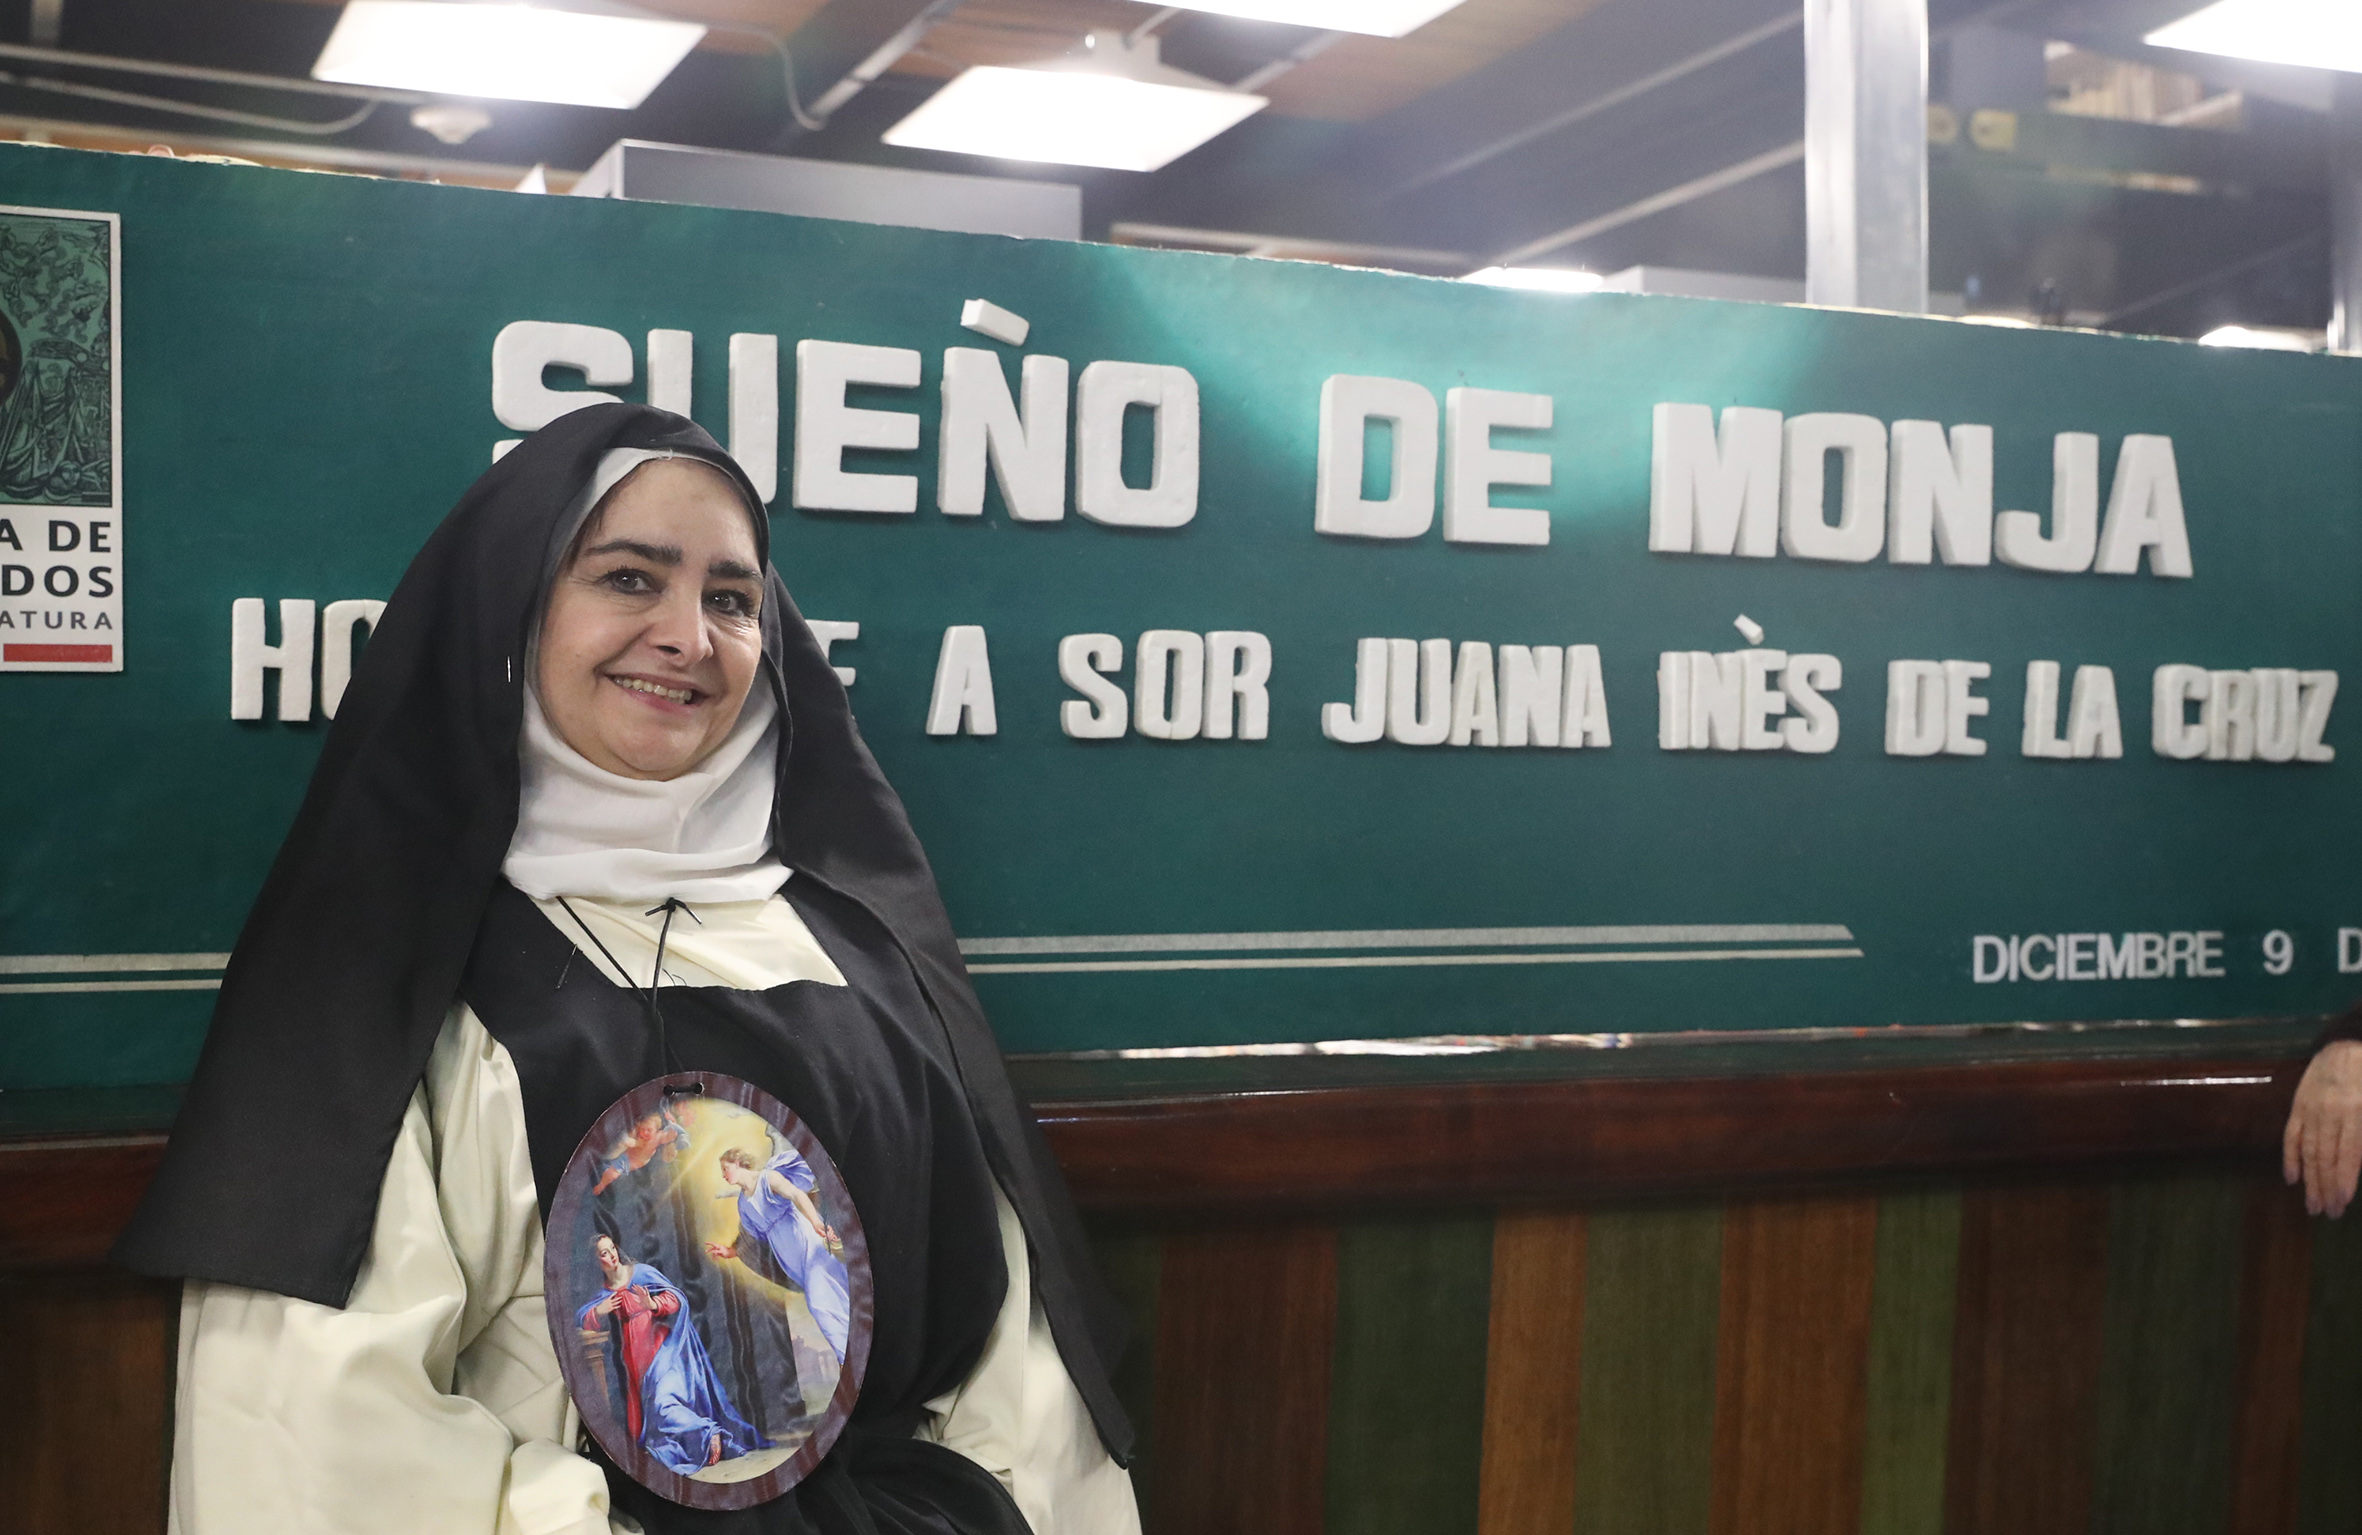 El legado literario de Sor Juana Inés de la Cruz sigue vigente a más de tres siglos de su muerte